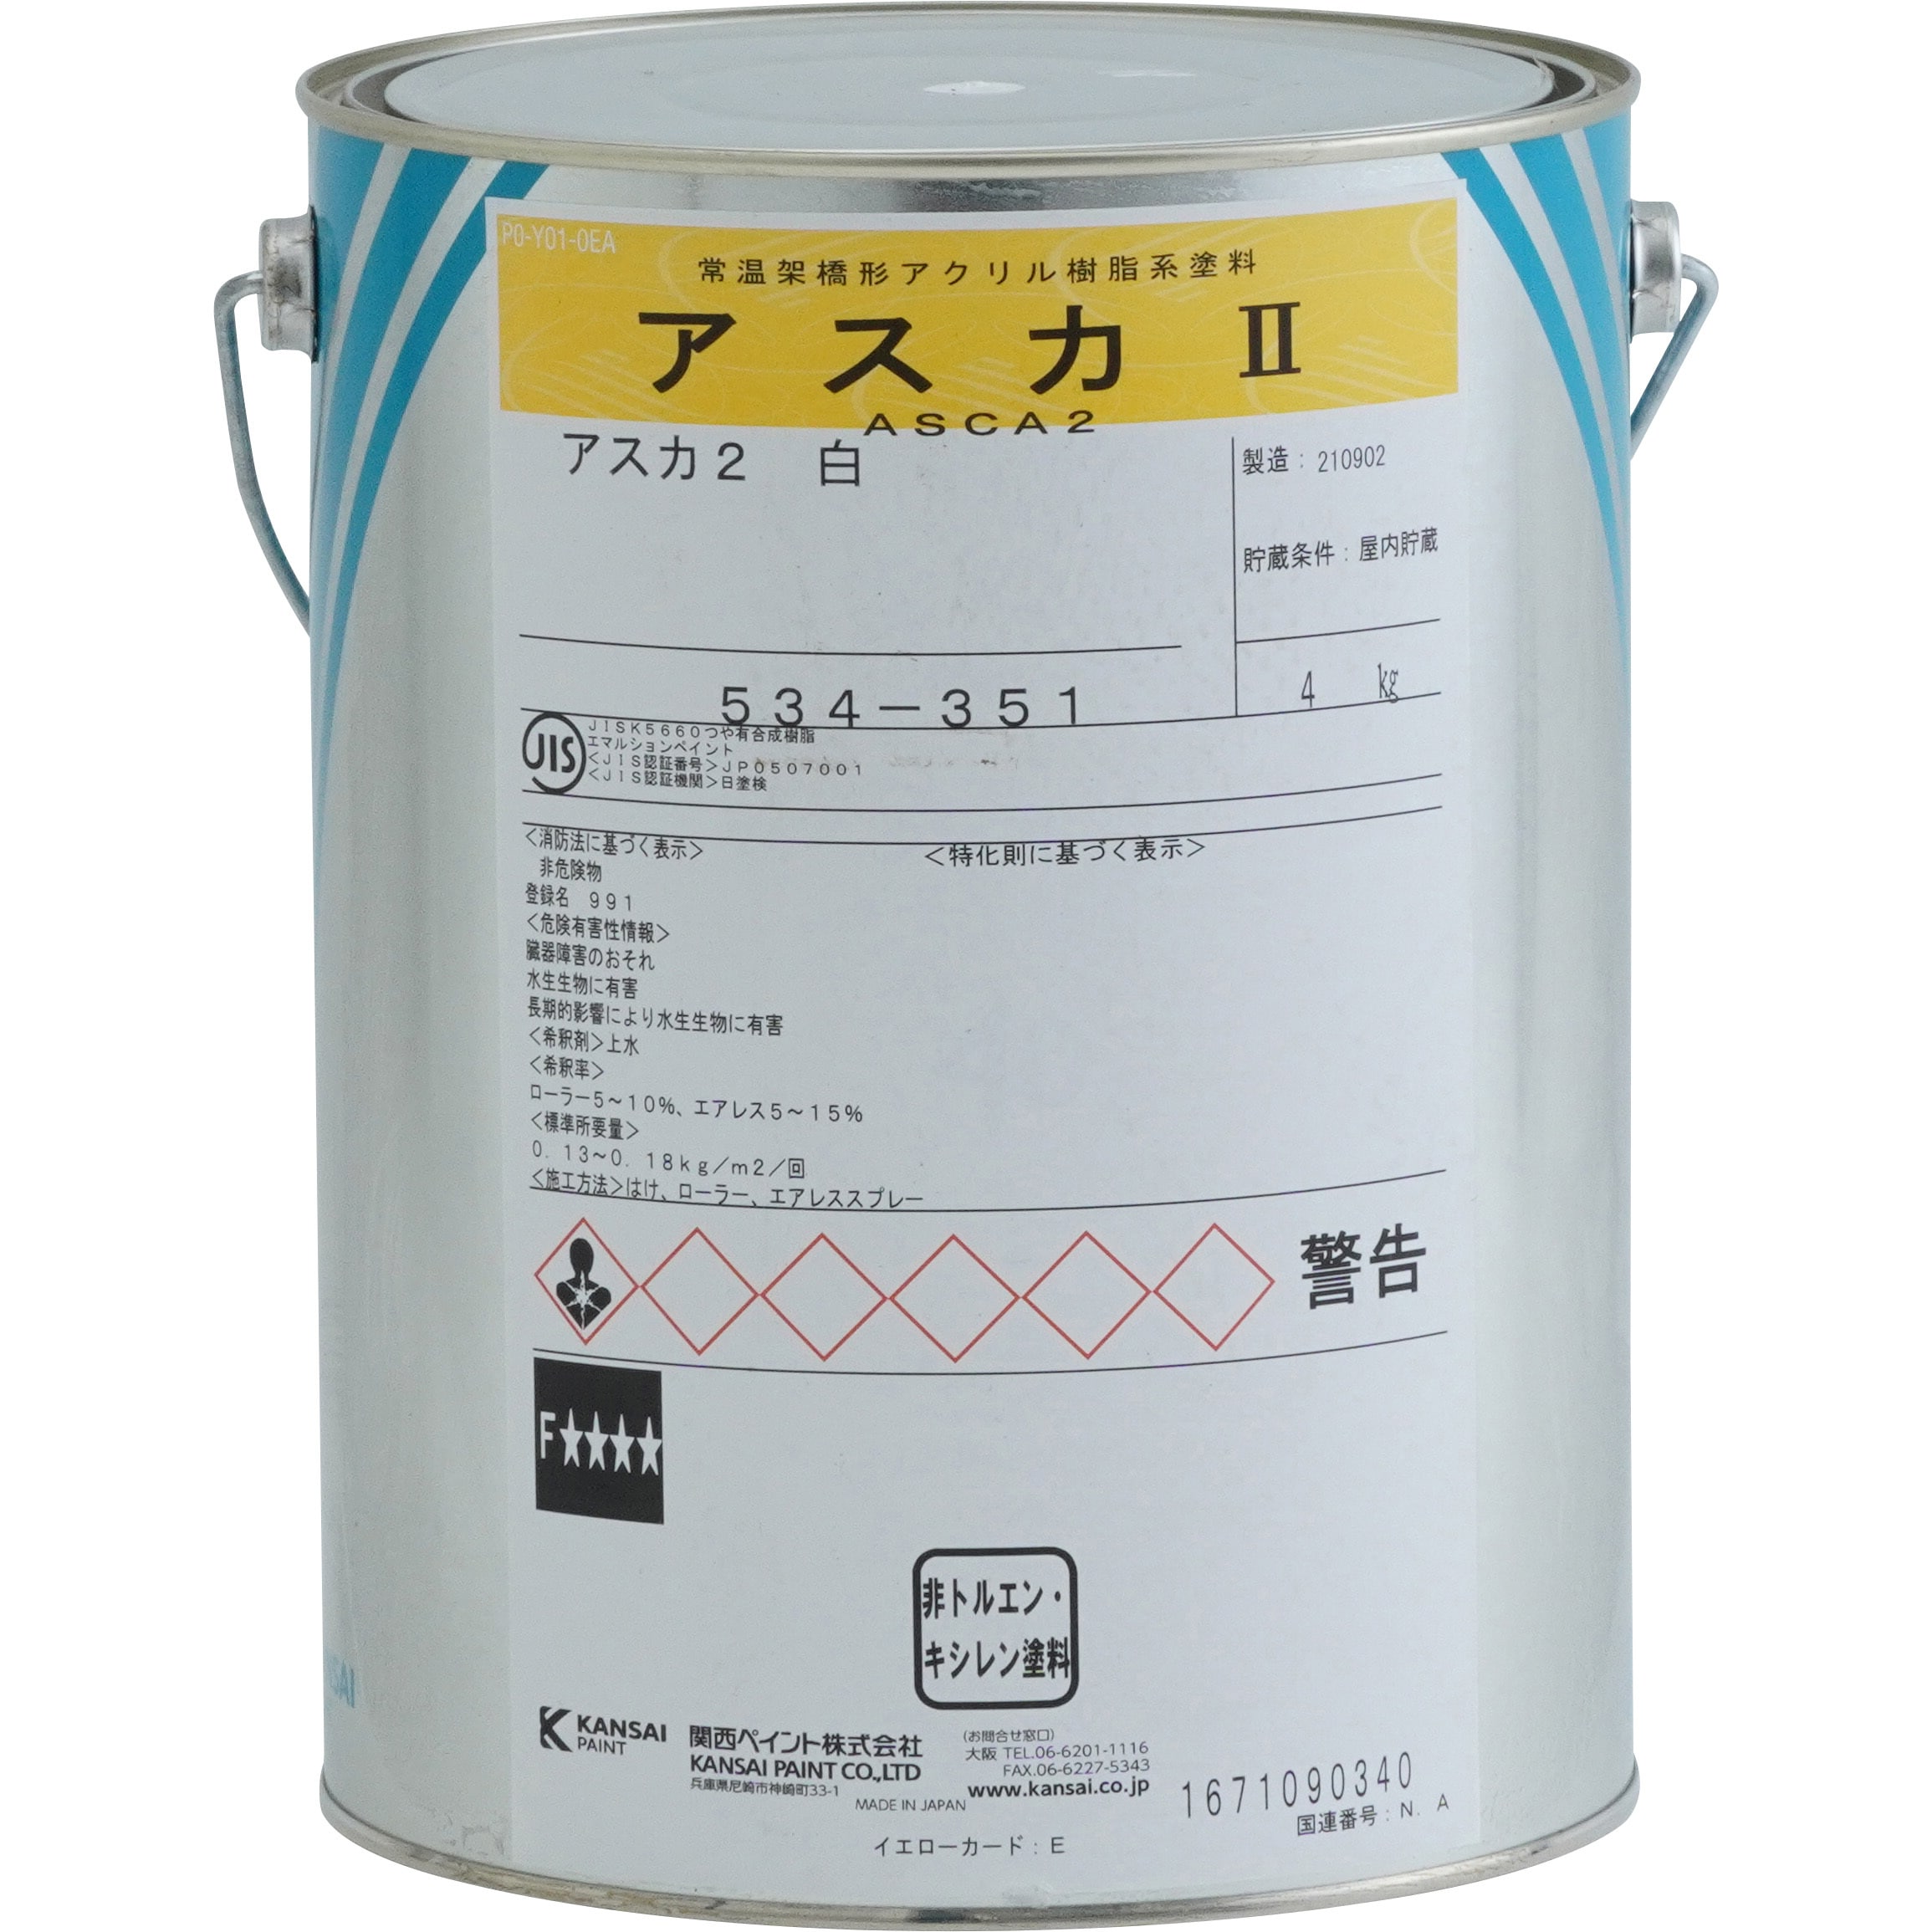 アスカ2 1缶(4kg) 関西ペイント 【通販モノタロウ】